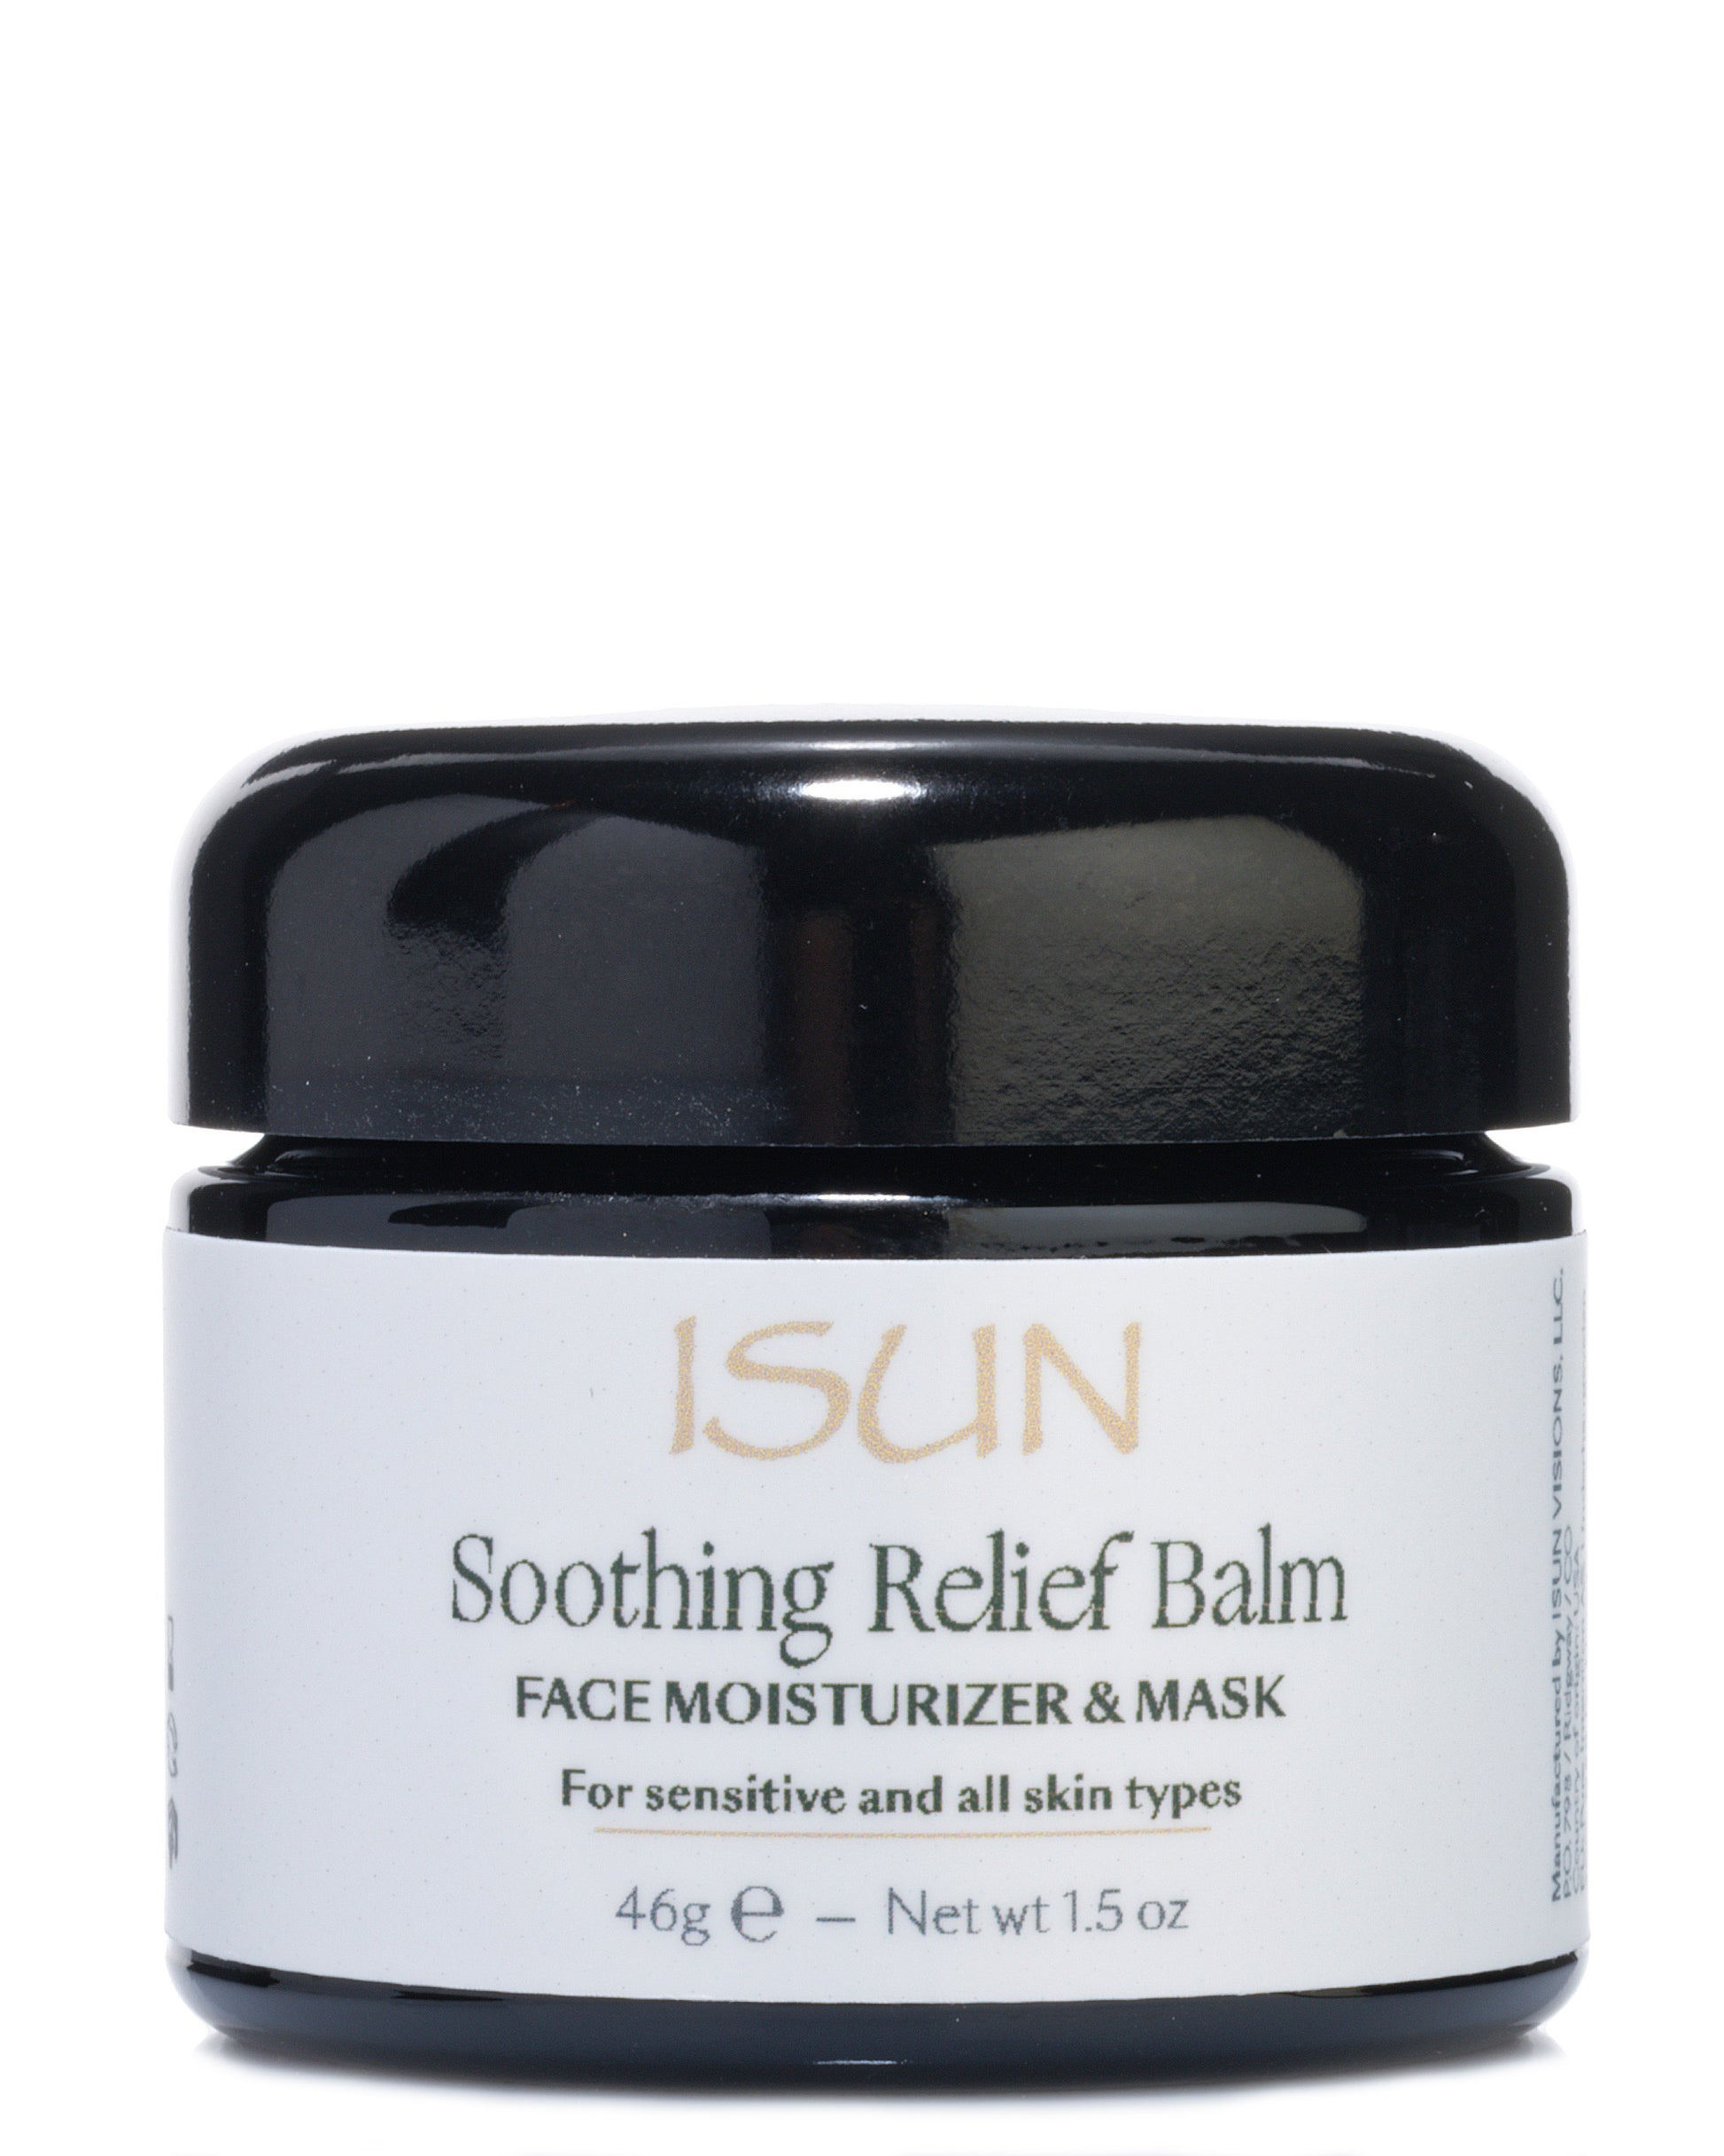 Soothing relief balm - máscara e hidratante - 50ml - Aging Back Club